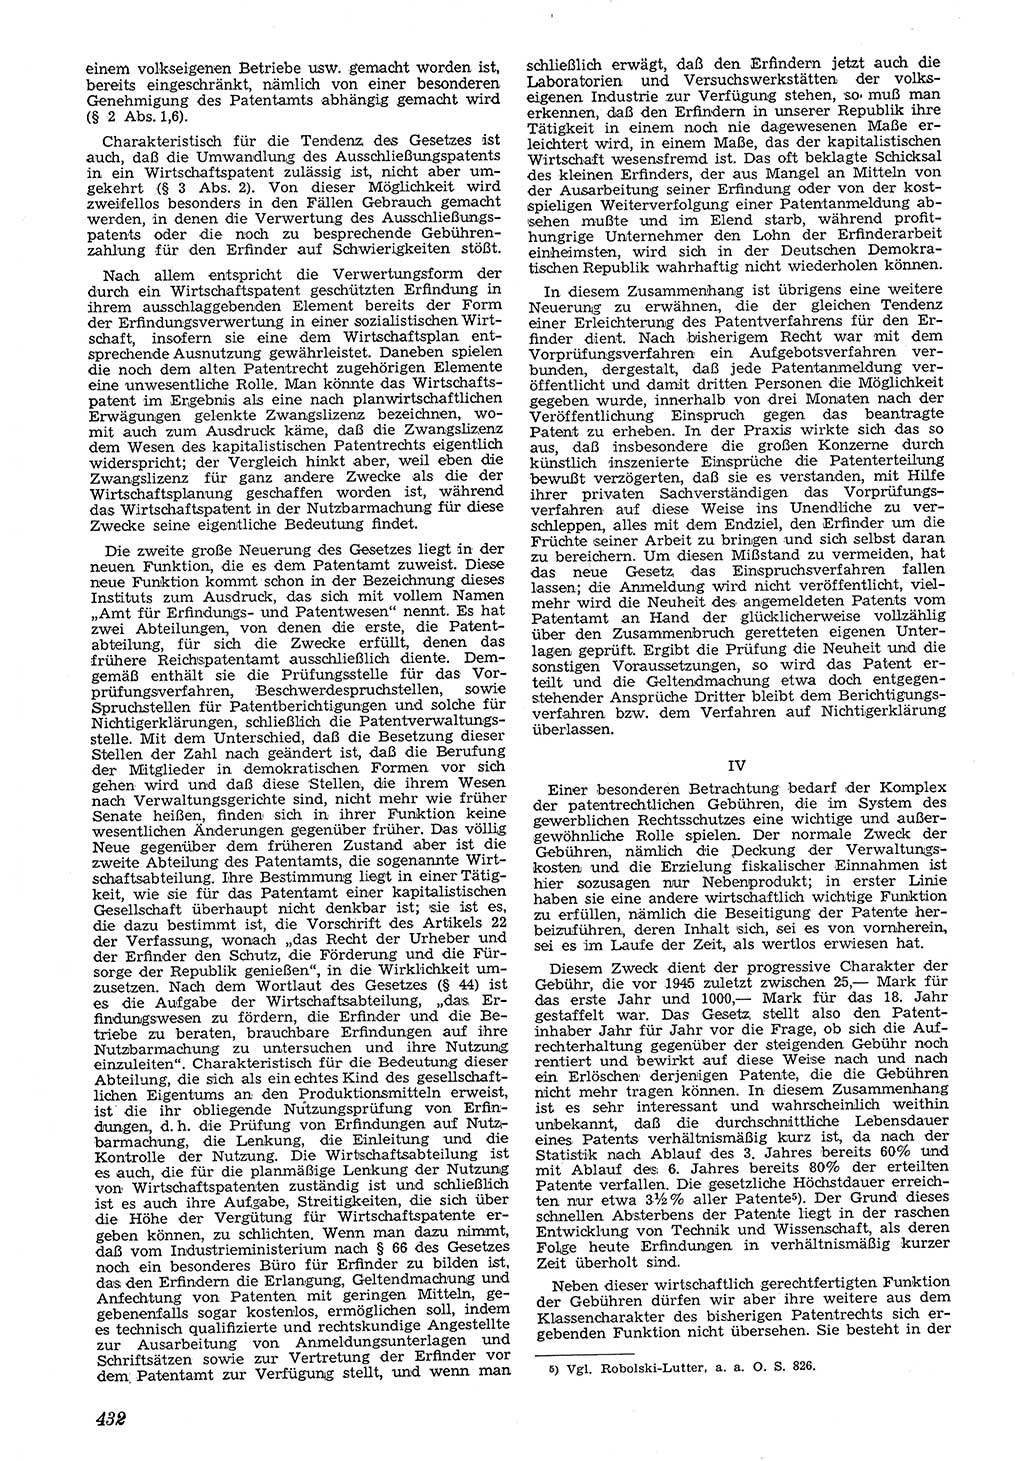 Neue Justiz (NJ), Zeitschrift für Recht und Rechtswissenschaft [Deutsche Demokratische Republik (DDR)], 4. Jahrgang 1950, Seite 432 (NJ DDR 1950, S. 432)